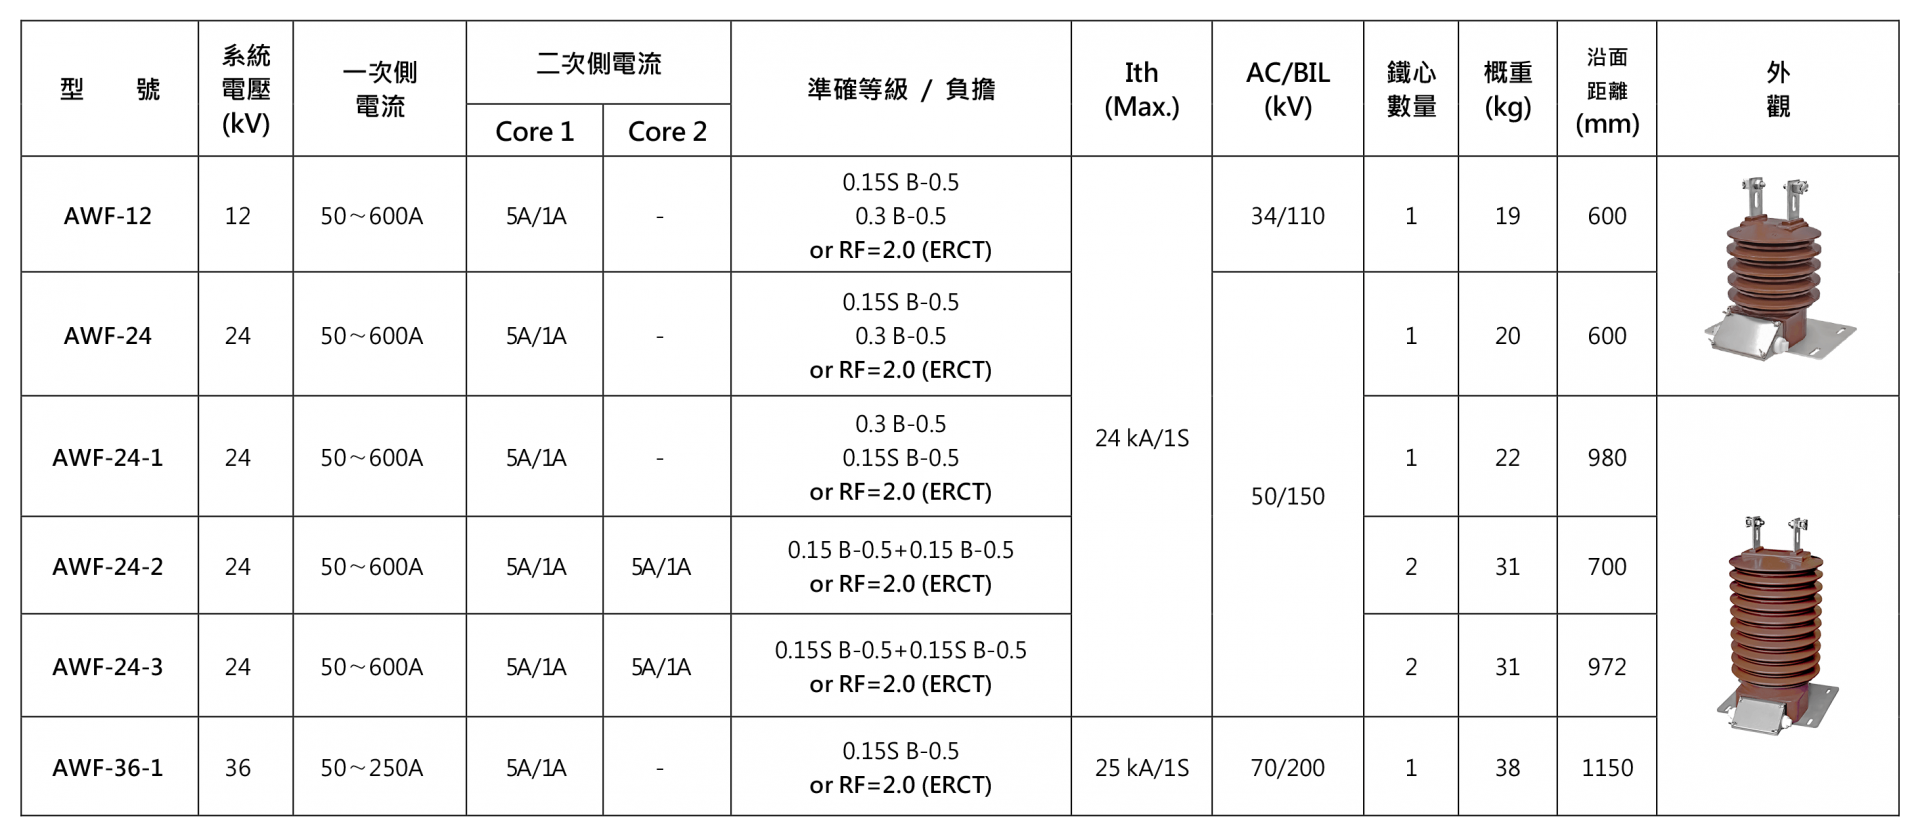 屋外型計費用比流器 / ERCT (10~30kV 級) — 選用表